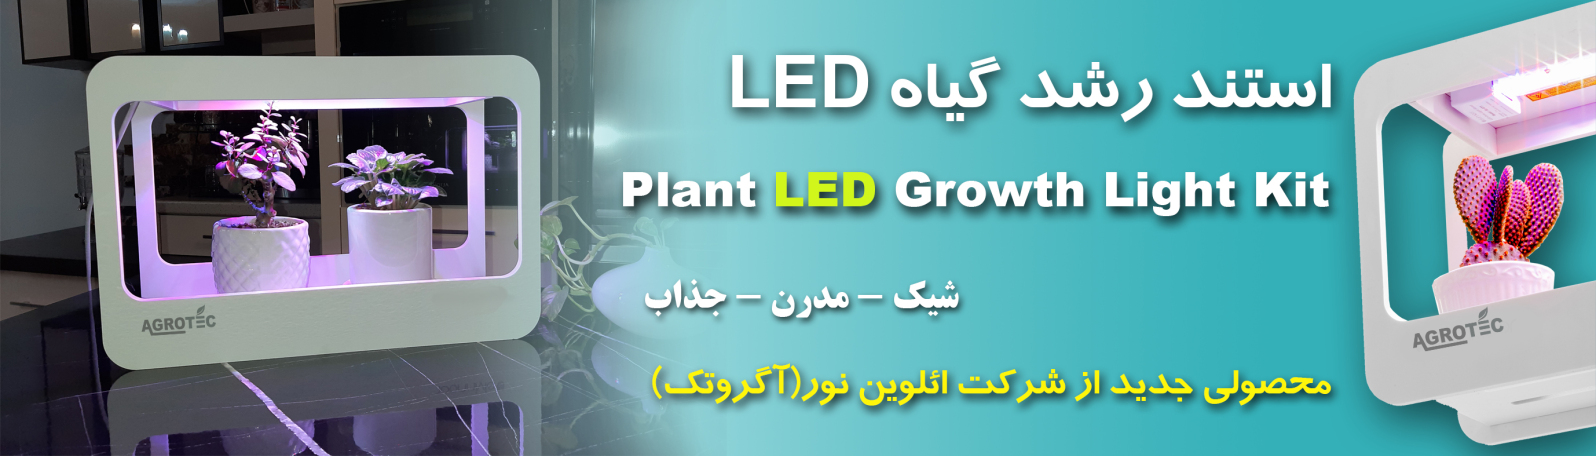 plant LED growth light kit